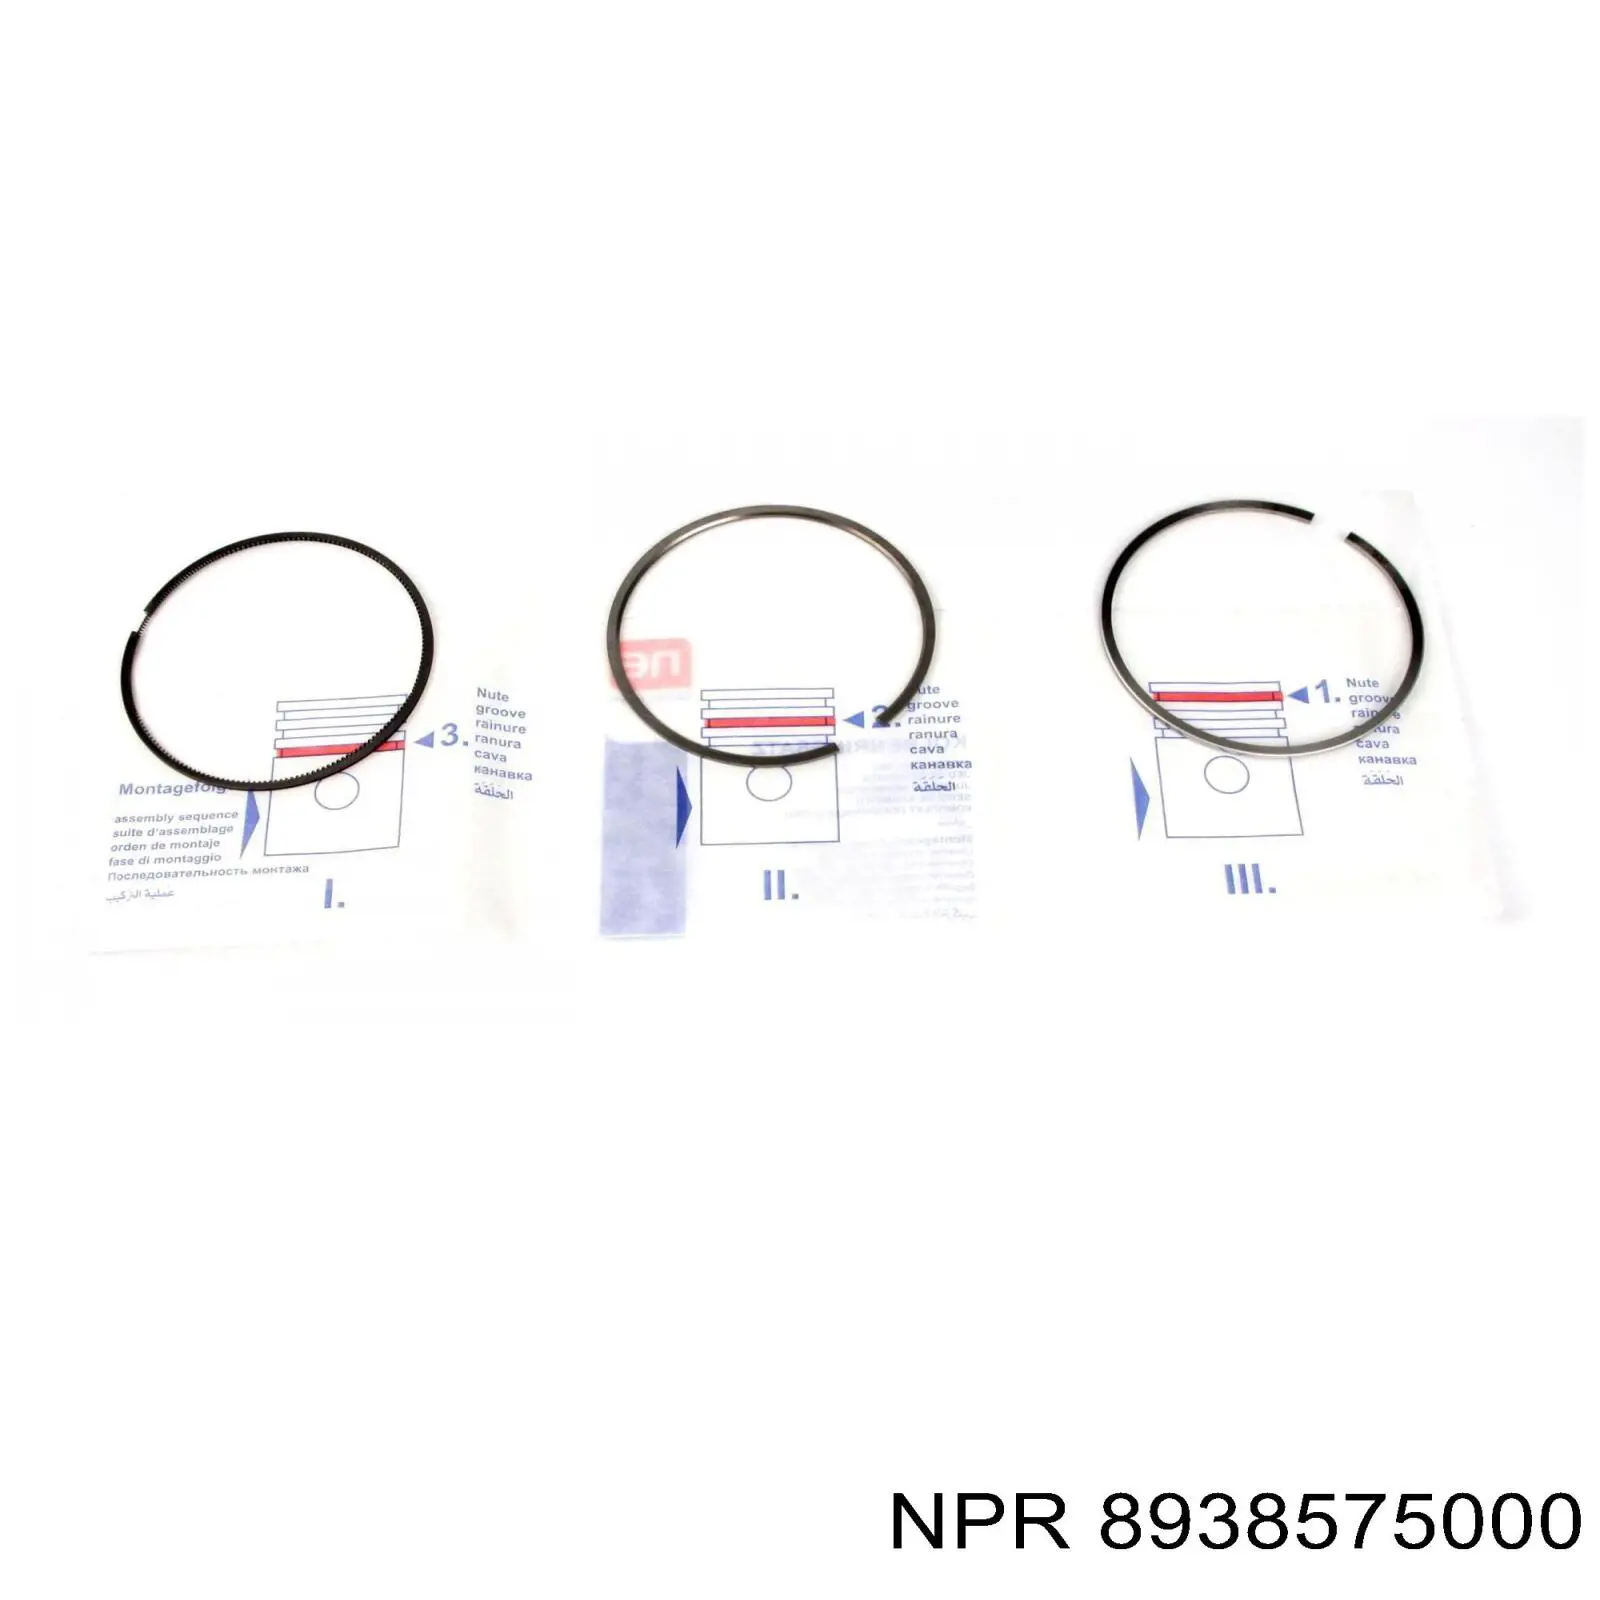 FR10-385750 Freccia кольца поршневые на 1 цилиндр, 2-й ремонт (+0,50)